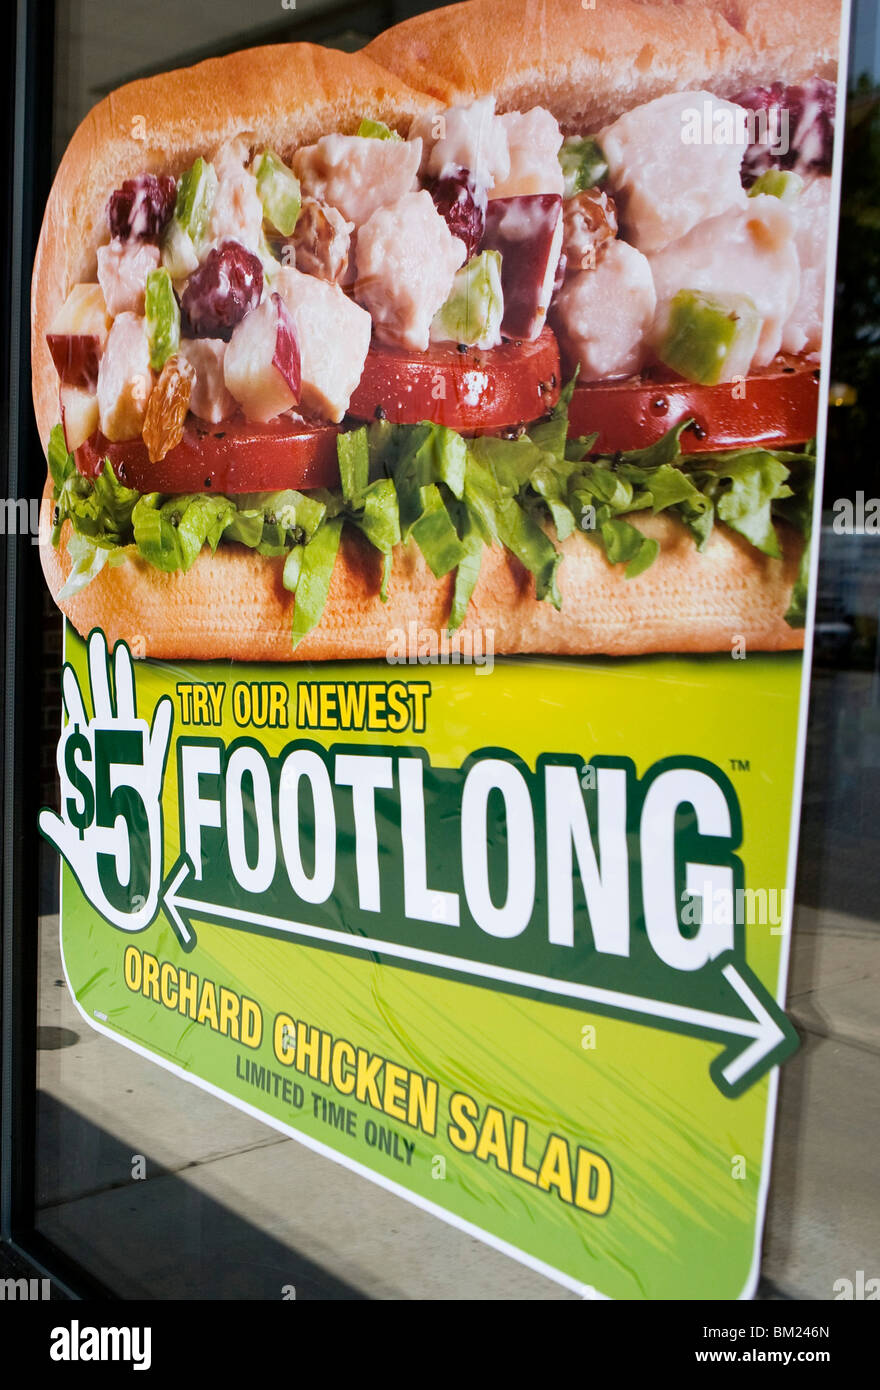 A Subway '$5 Footlong' sign.  Stock Photo